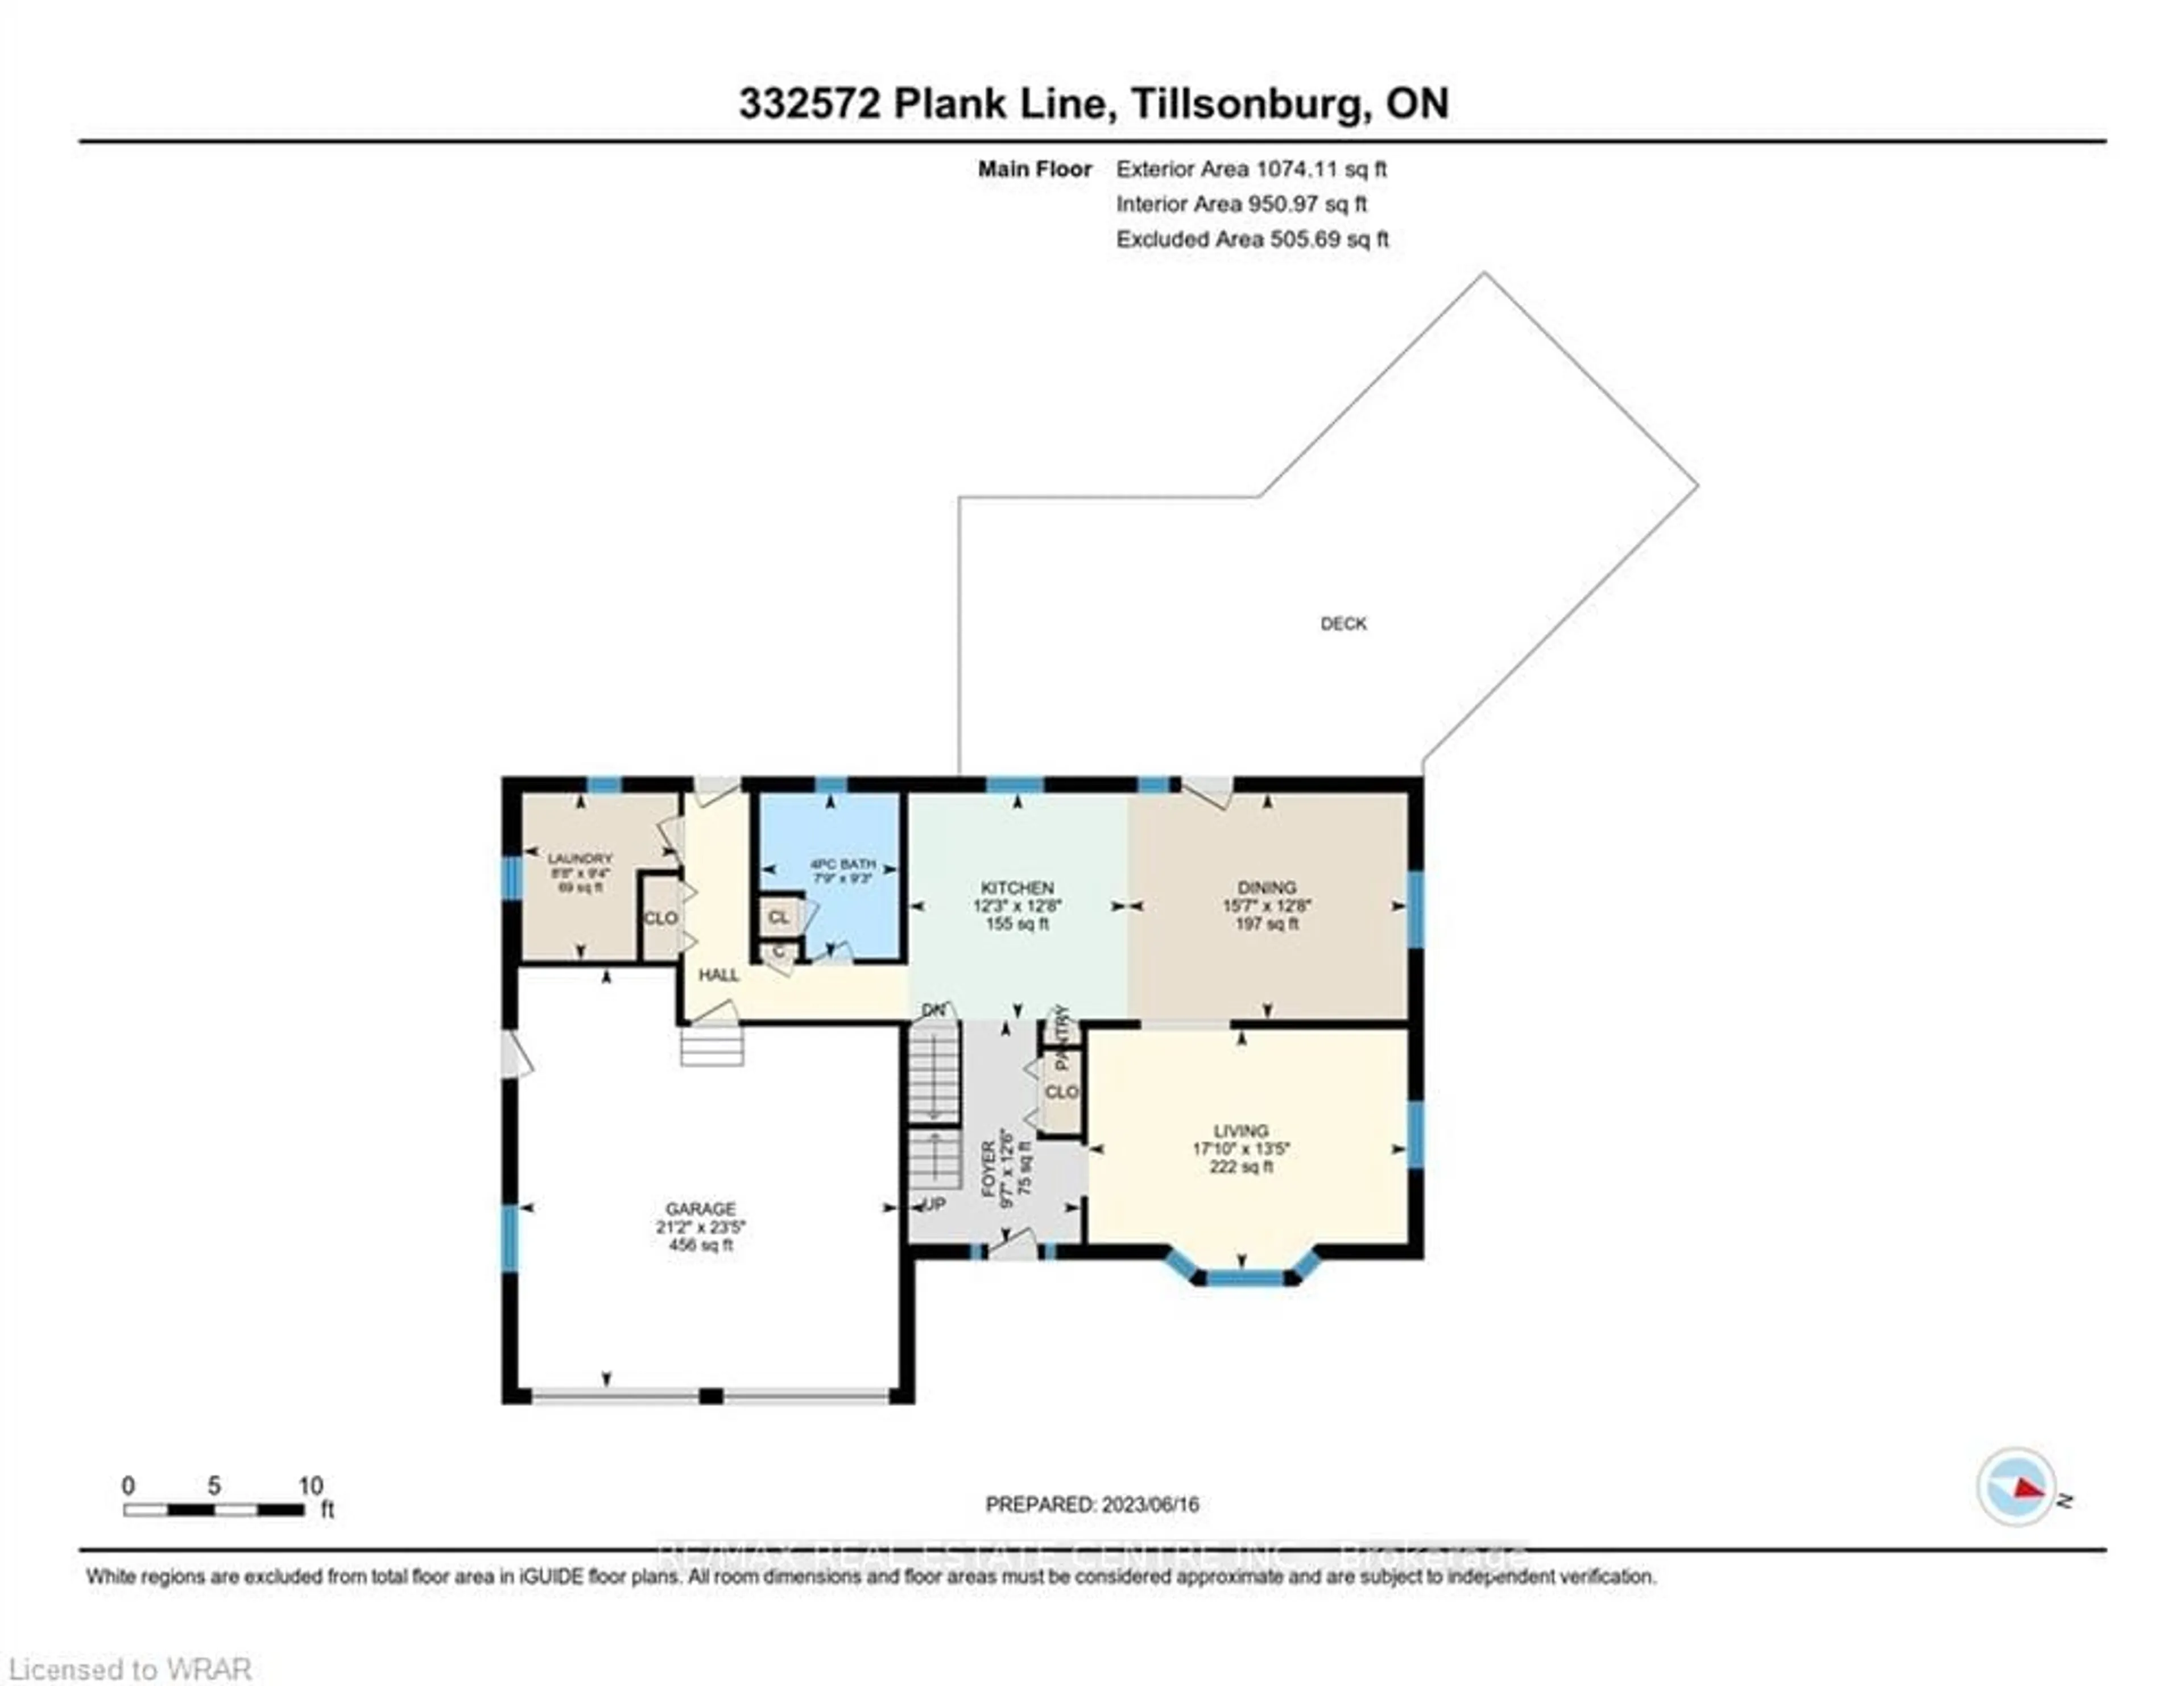 Floor plan for 332572 Plank Line, Tillsonburg Ontario N4G 4H1